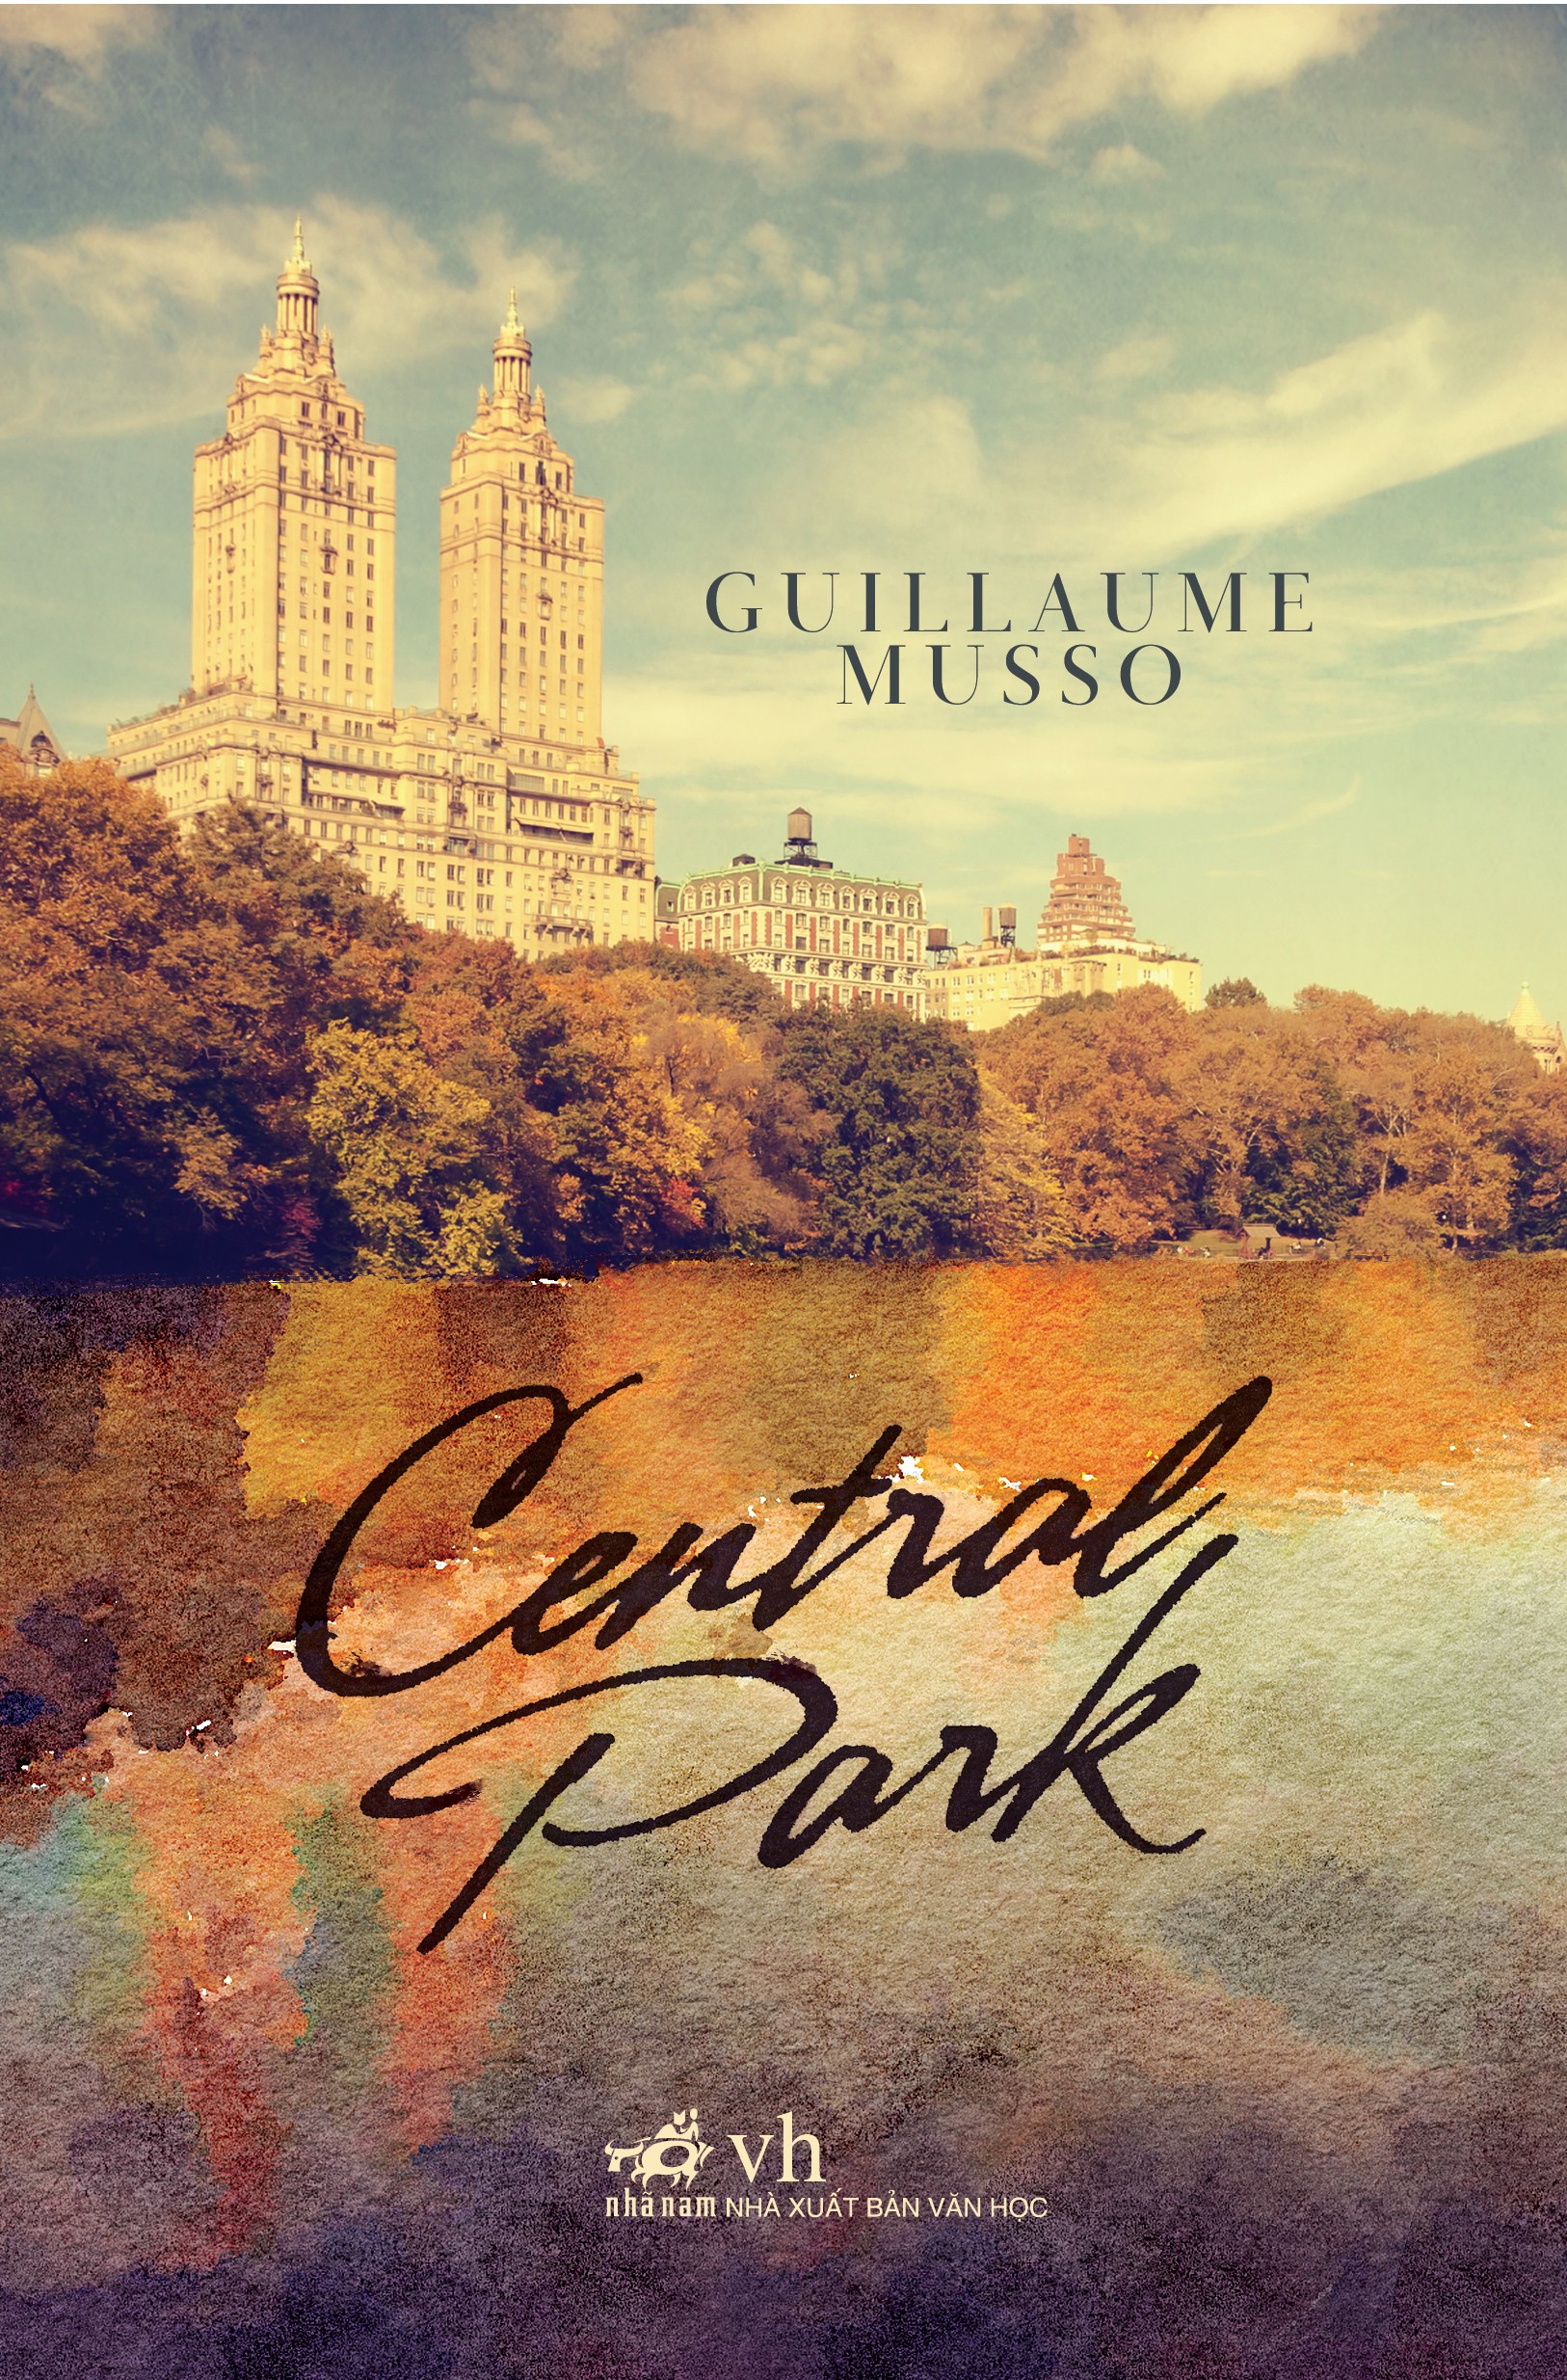 Musso : son nouveau livre Central Park piraté le soir même